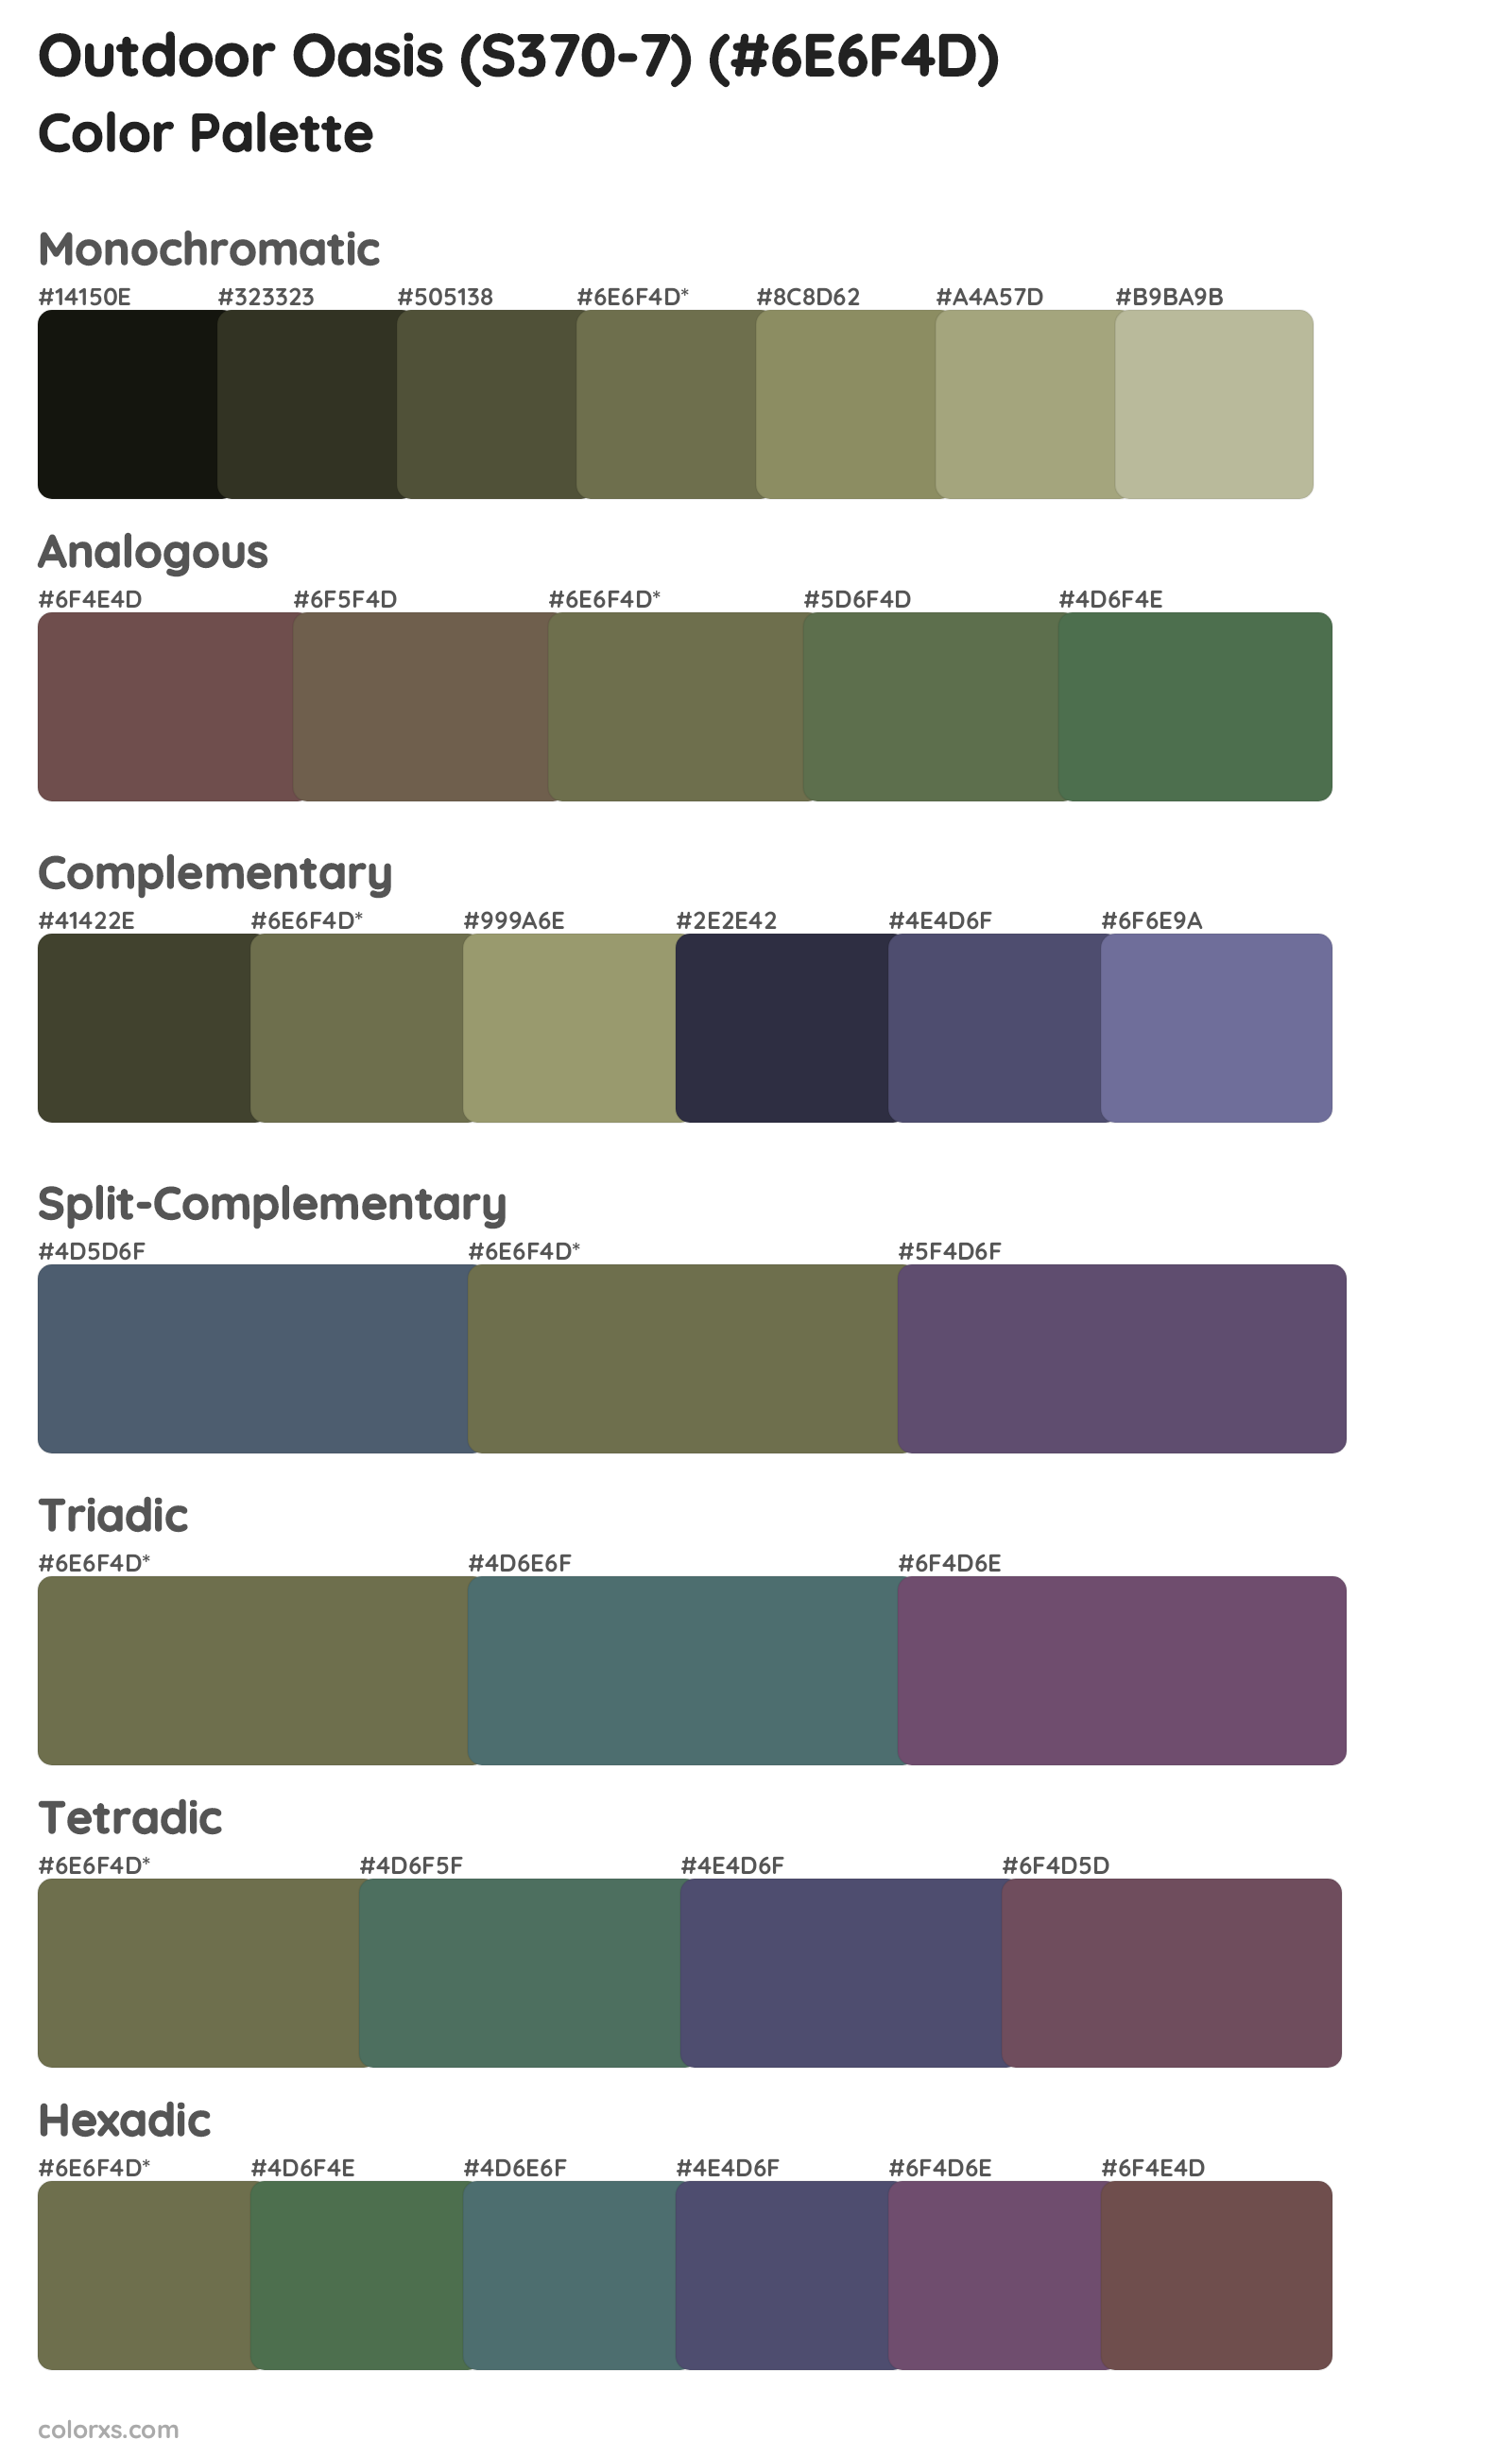 Outdoor Oasis (S370-7) Color Scheme Palettes